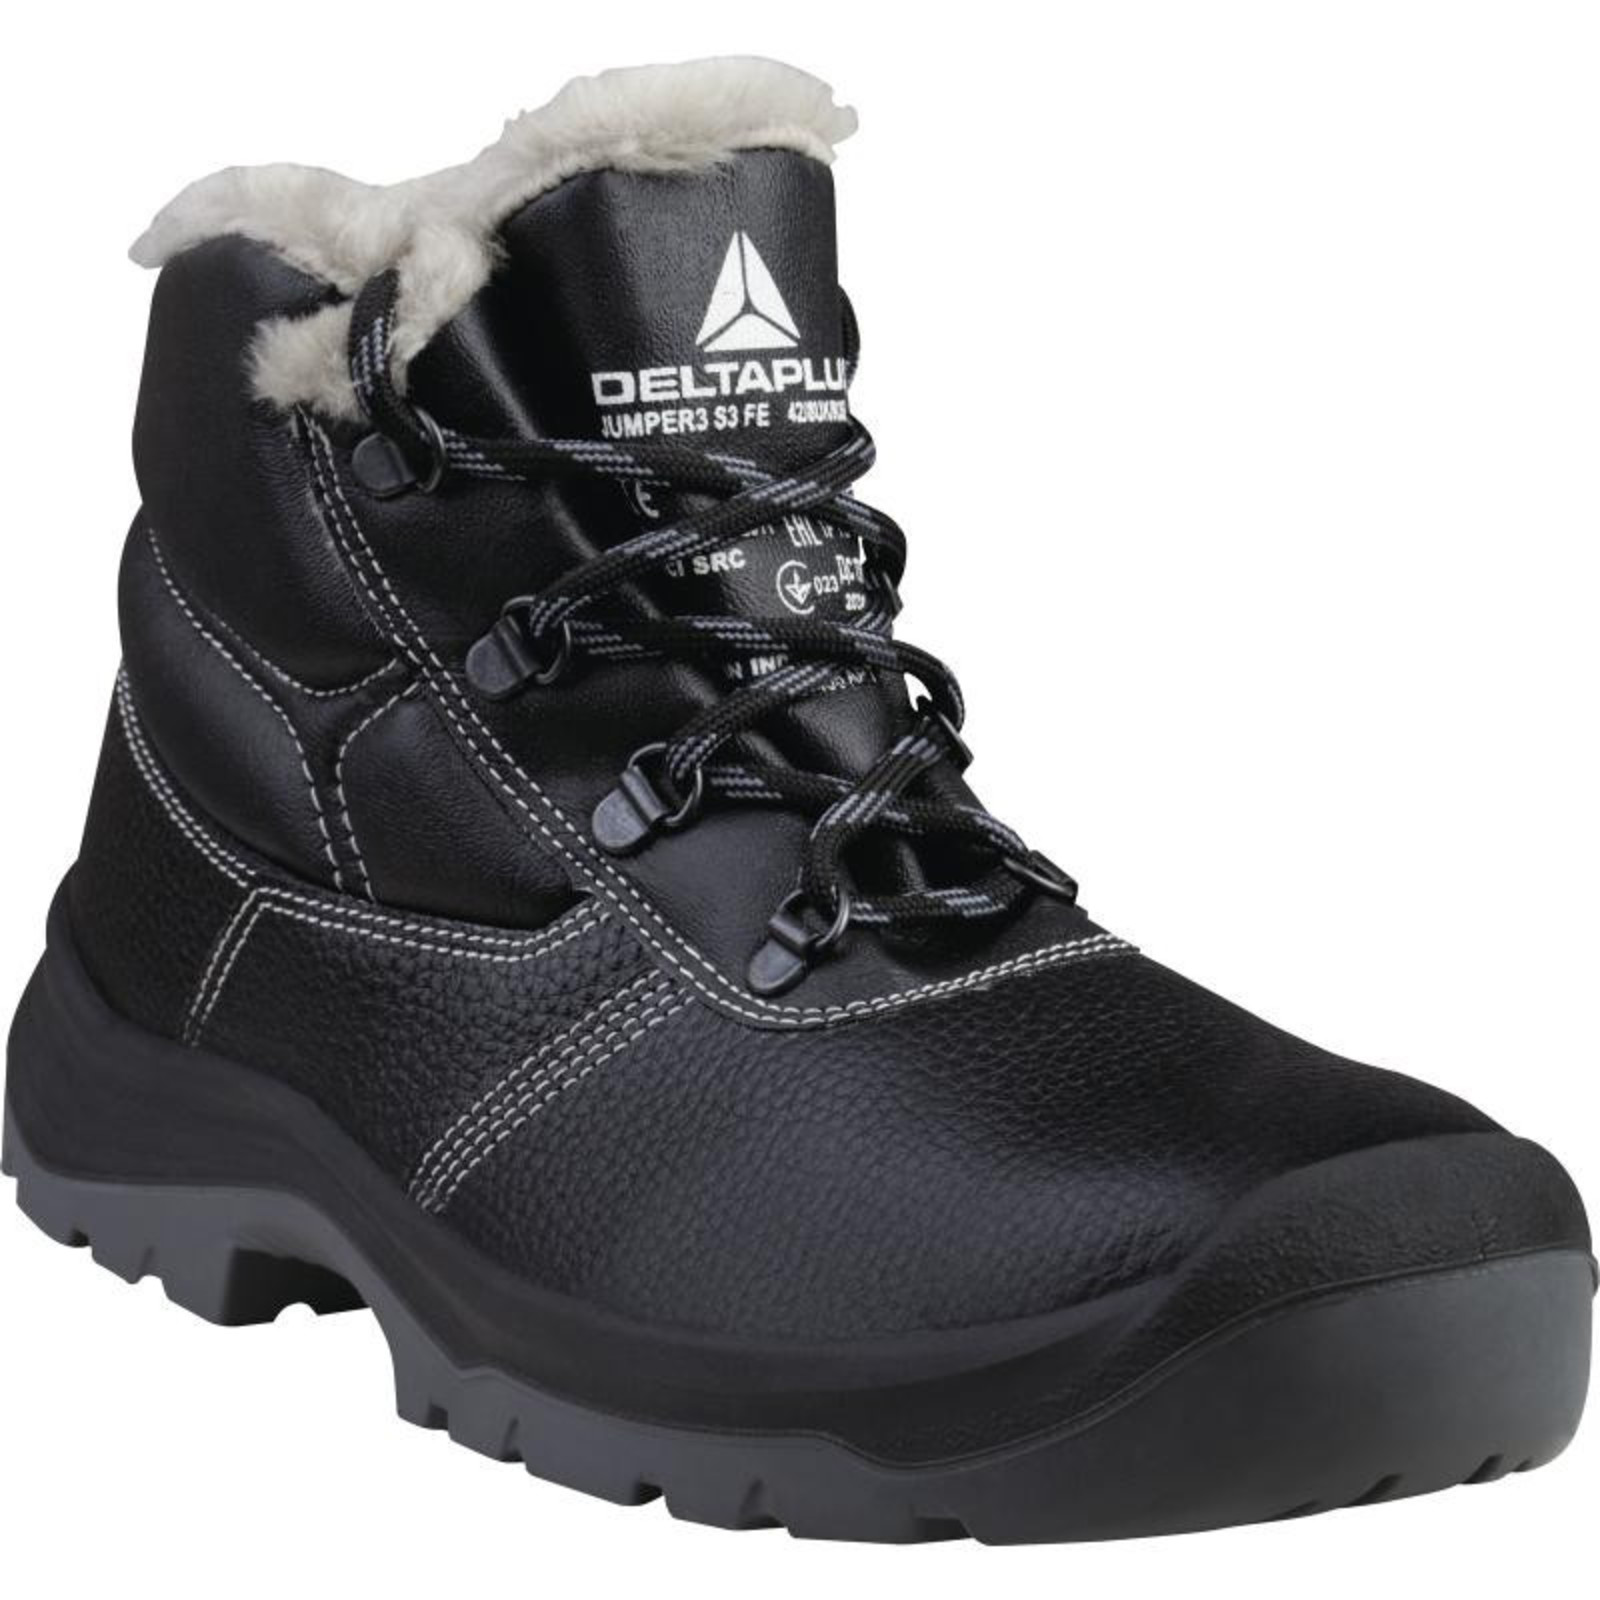 Zimná členková bezpečnostná obuv Delta Plus Jumper3 S3 - veľkosť: 36, farba: čierna